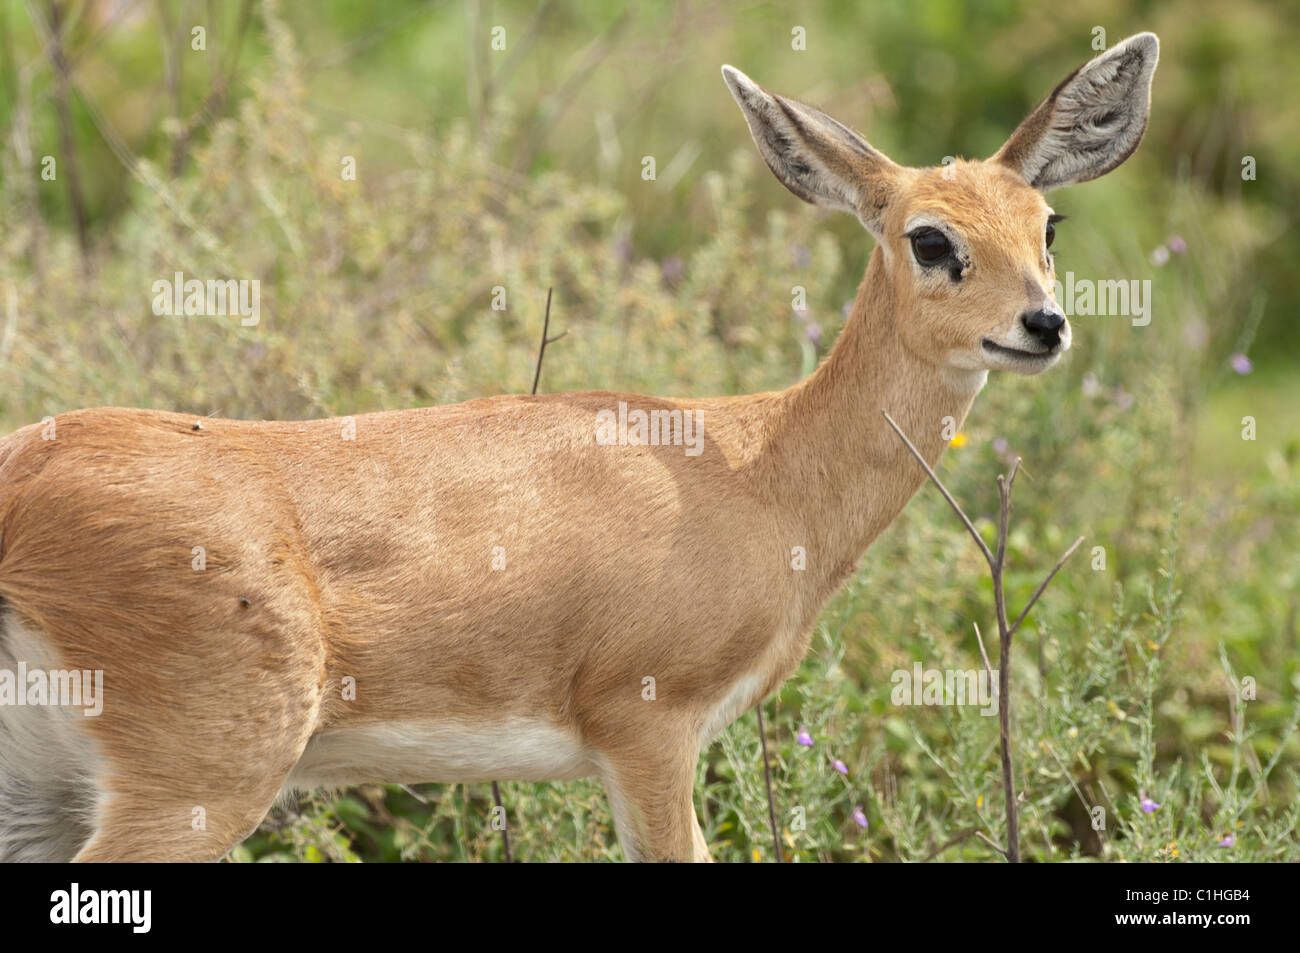 Female oribi standing near some brush. Stock Photo